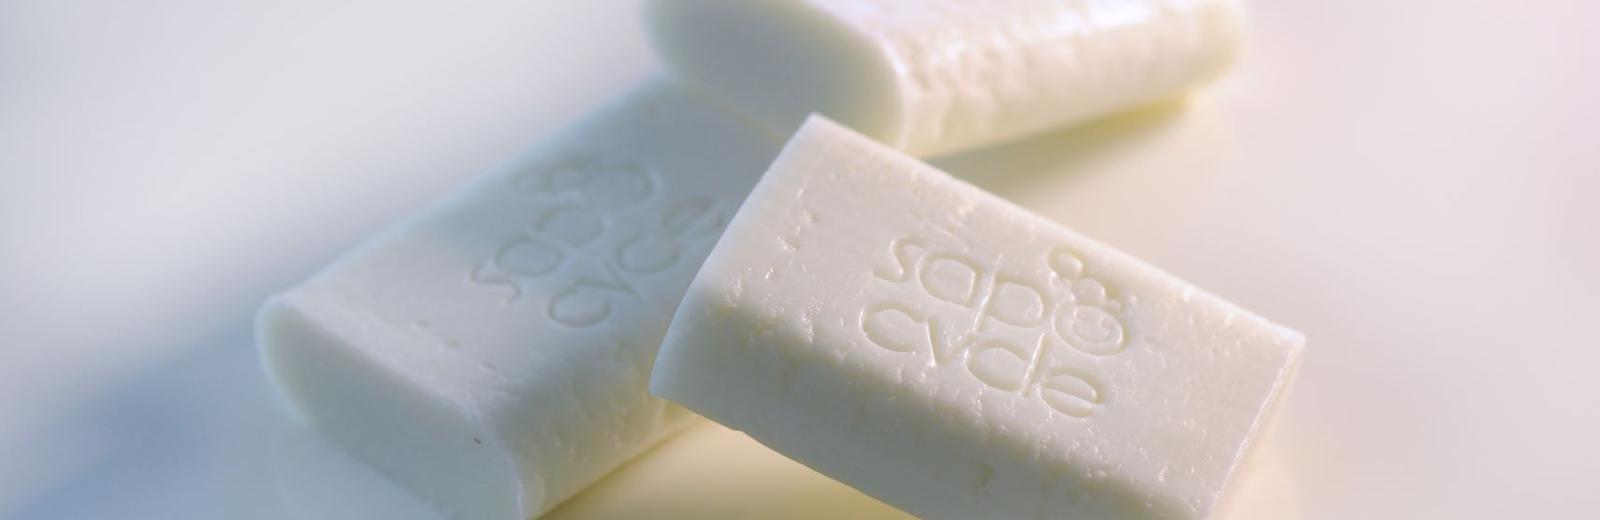 SapoCycle fabrique de nouvelles savonnettes à partir des savons usagés des hôtels.